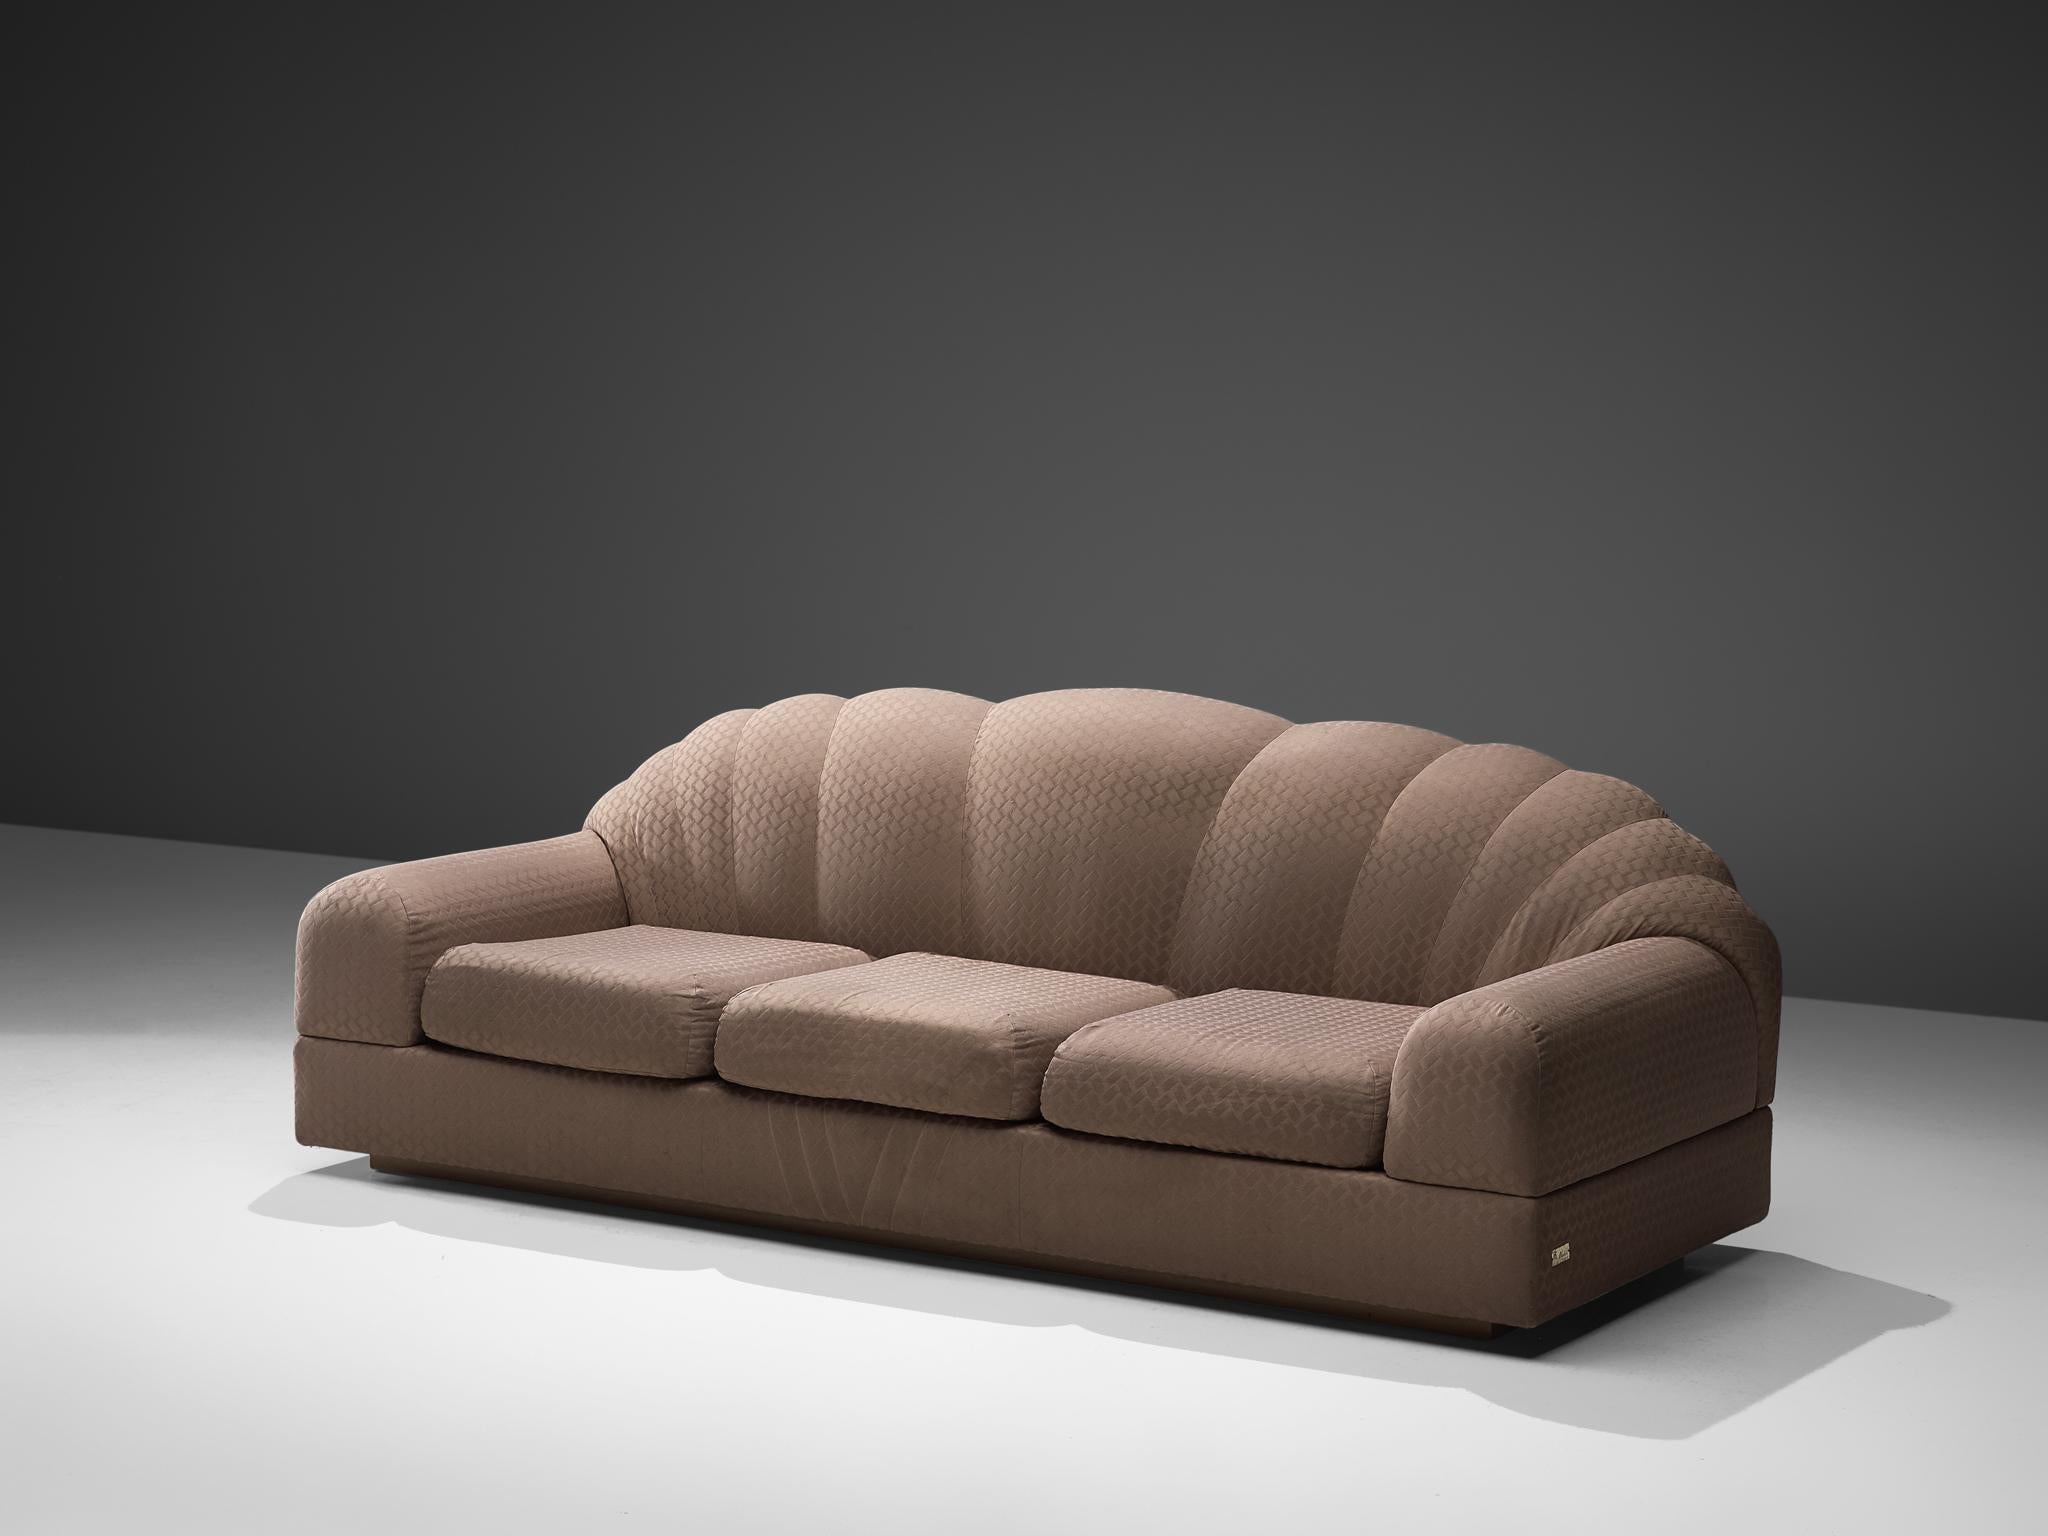 Alain Delon für Maison Jansen, Dreisitzer-Sofa, Stoff, Frankreich, 1970er Jahre.

Dieses verschnörkelte, bequeme Sofa hat ein starkes und verspieltes Design. Der hohe, geflochtene Rücken gibt dem Sitzenden perfekten Halt. Die dicke Sitzfläche mit